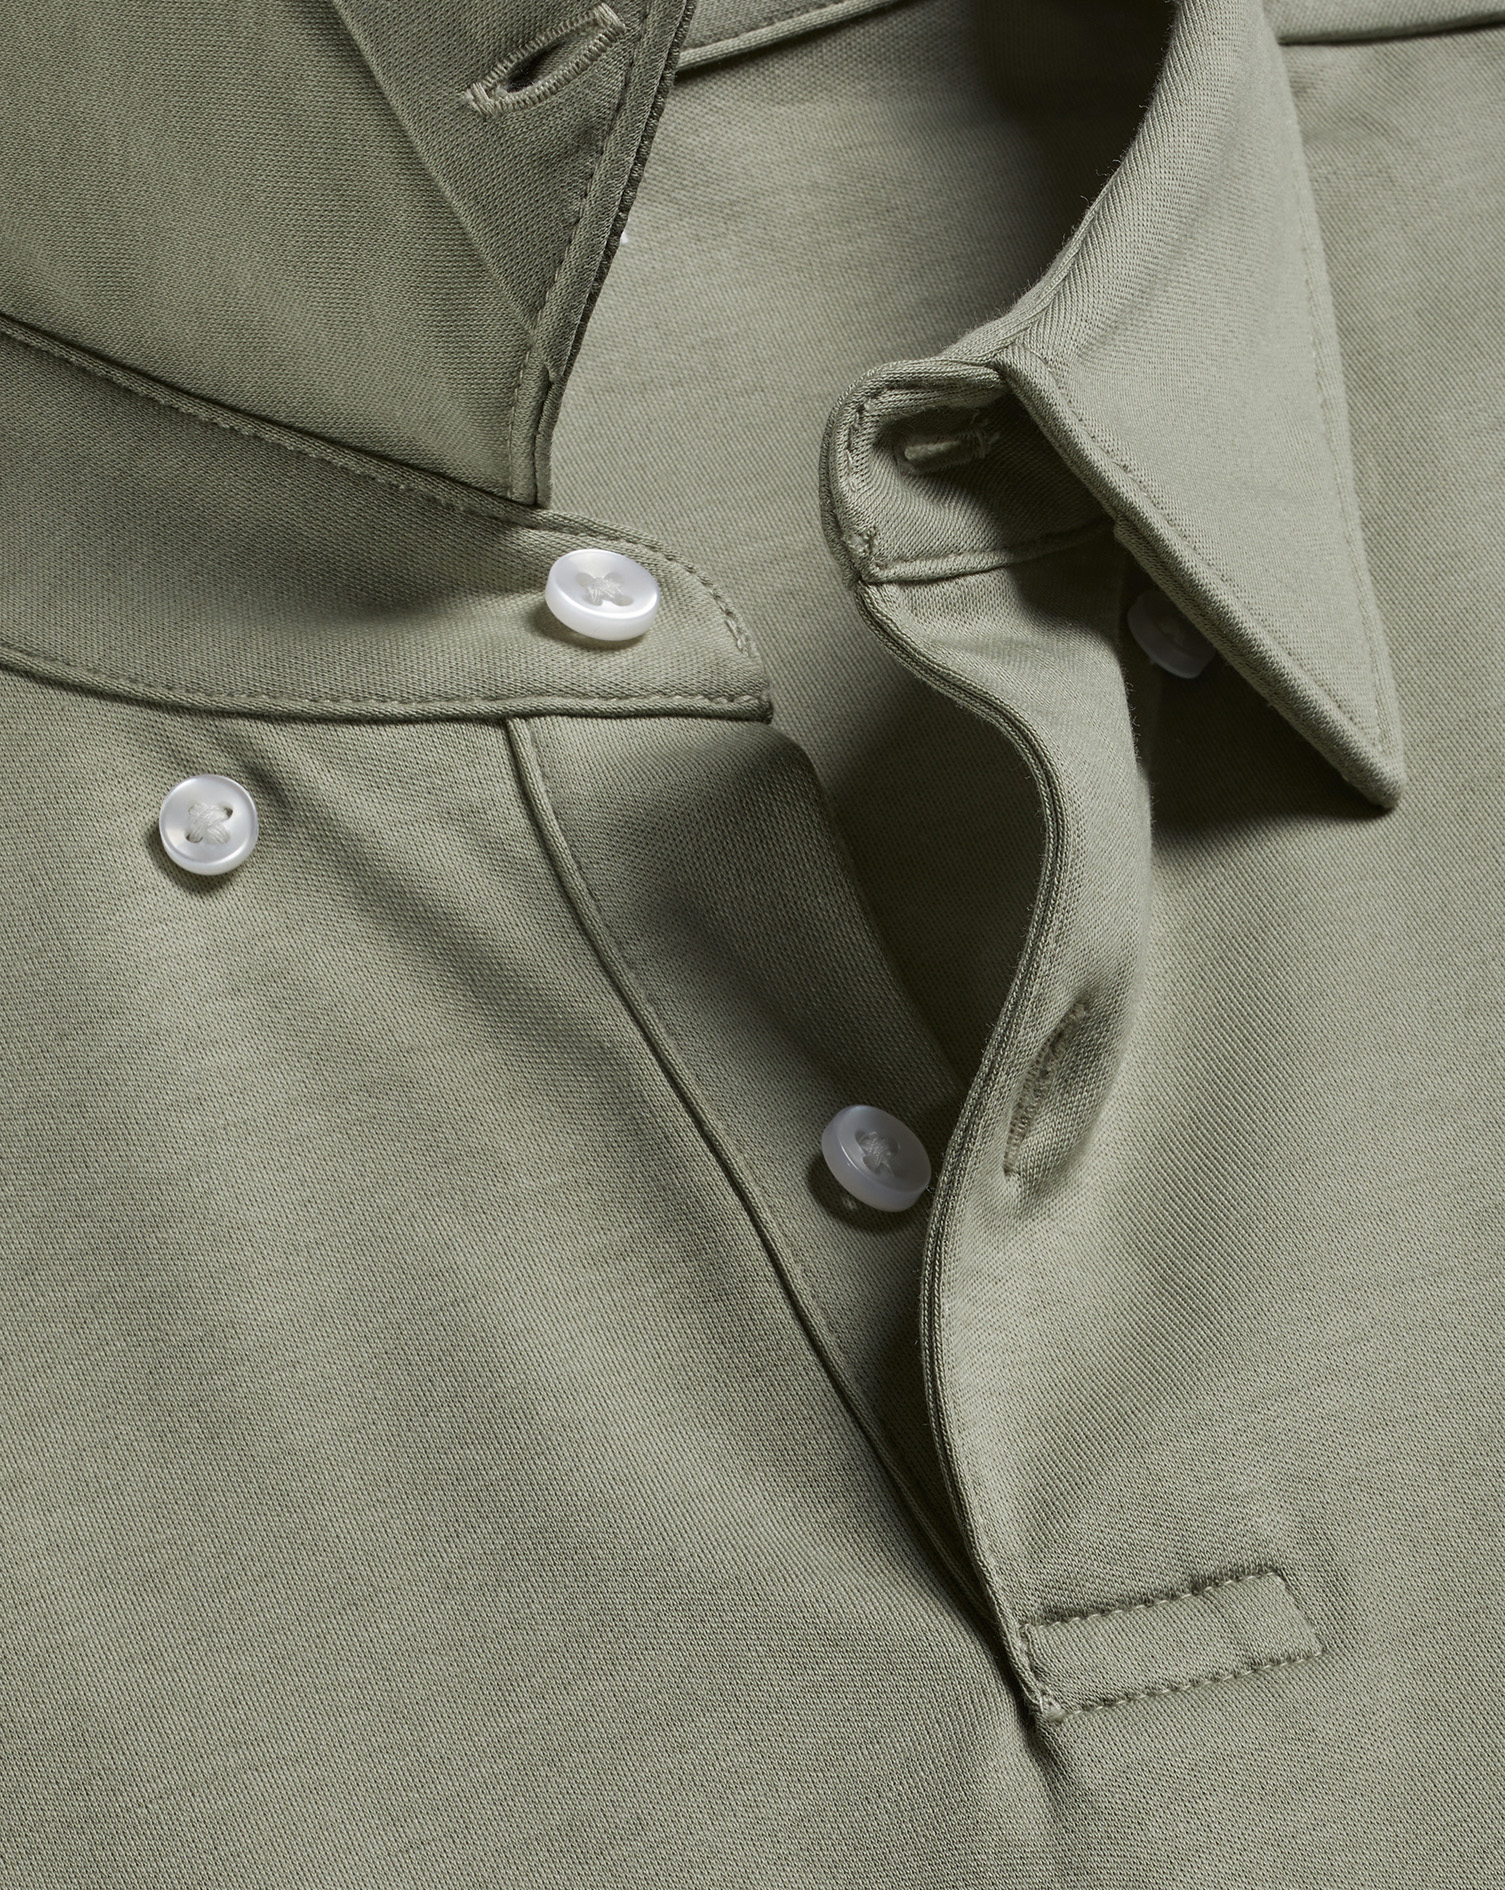 Men's Charles Tyrwhitt Smart Jersey Polo Shirt - Light Sage Green Size XXXL Cotton
